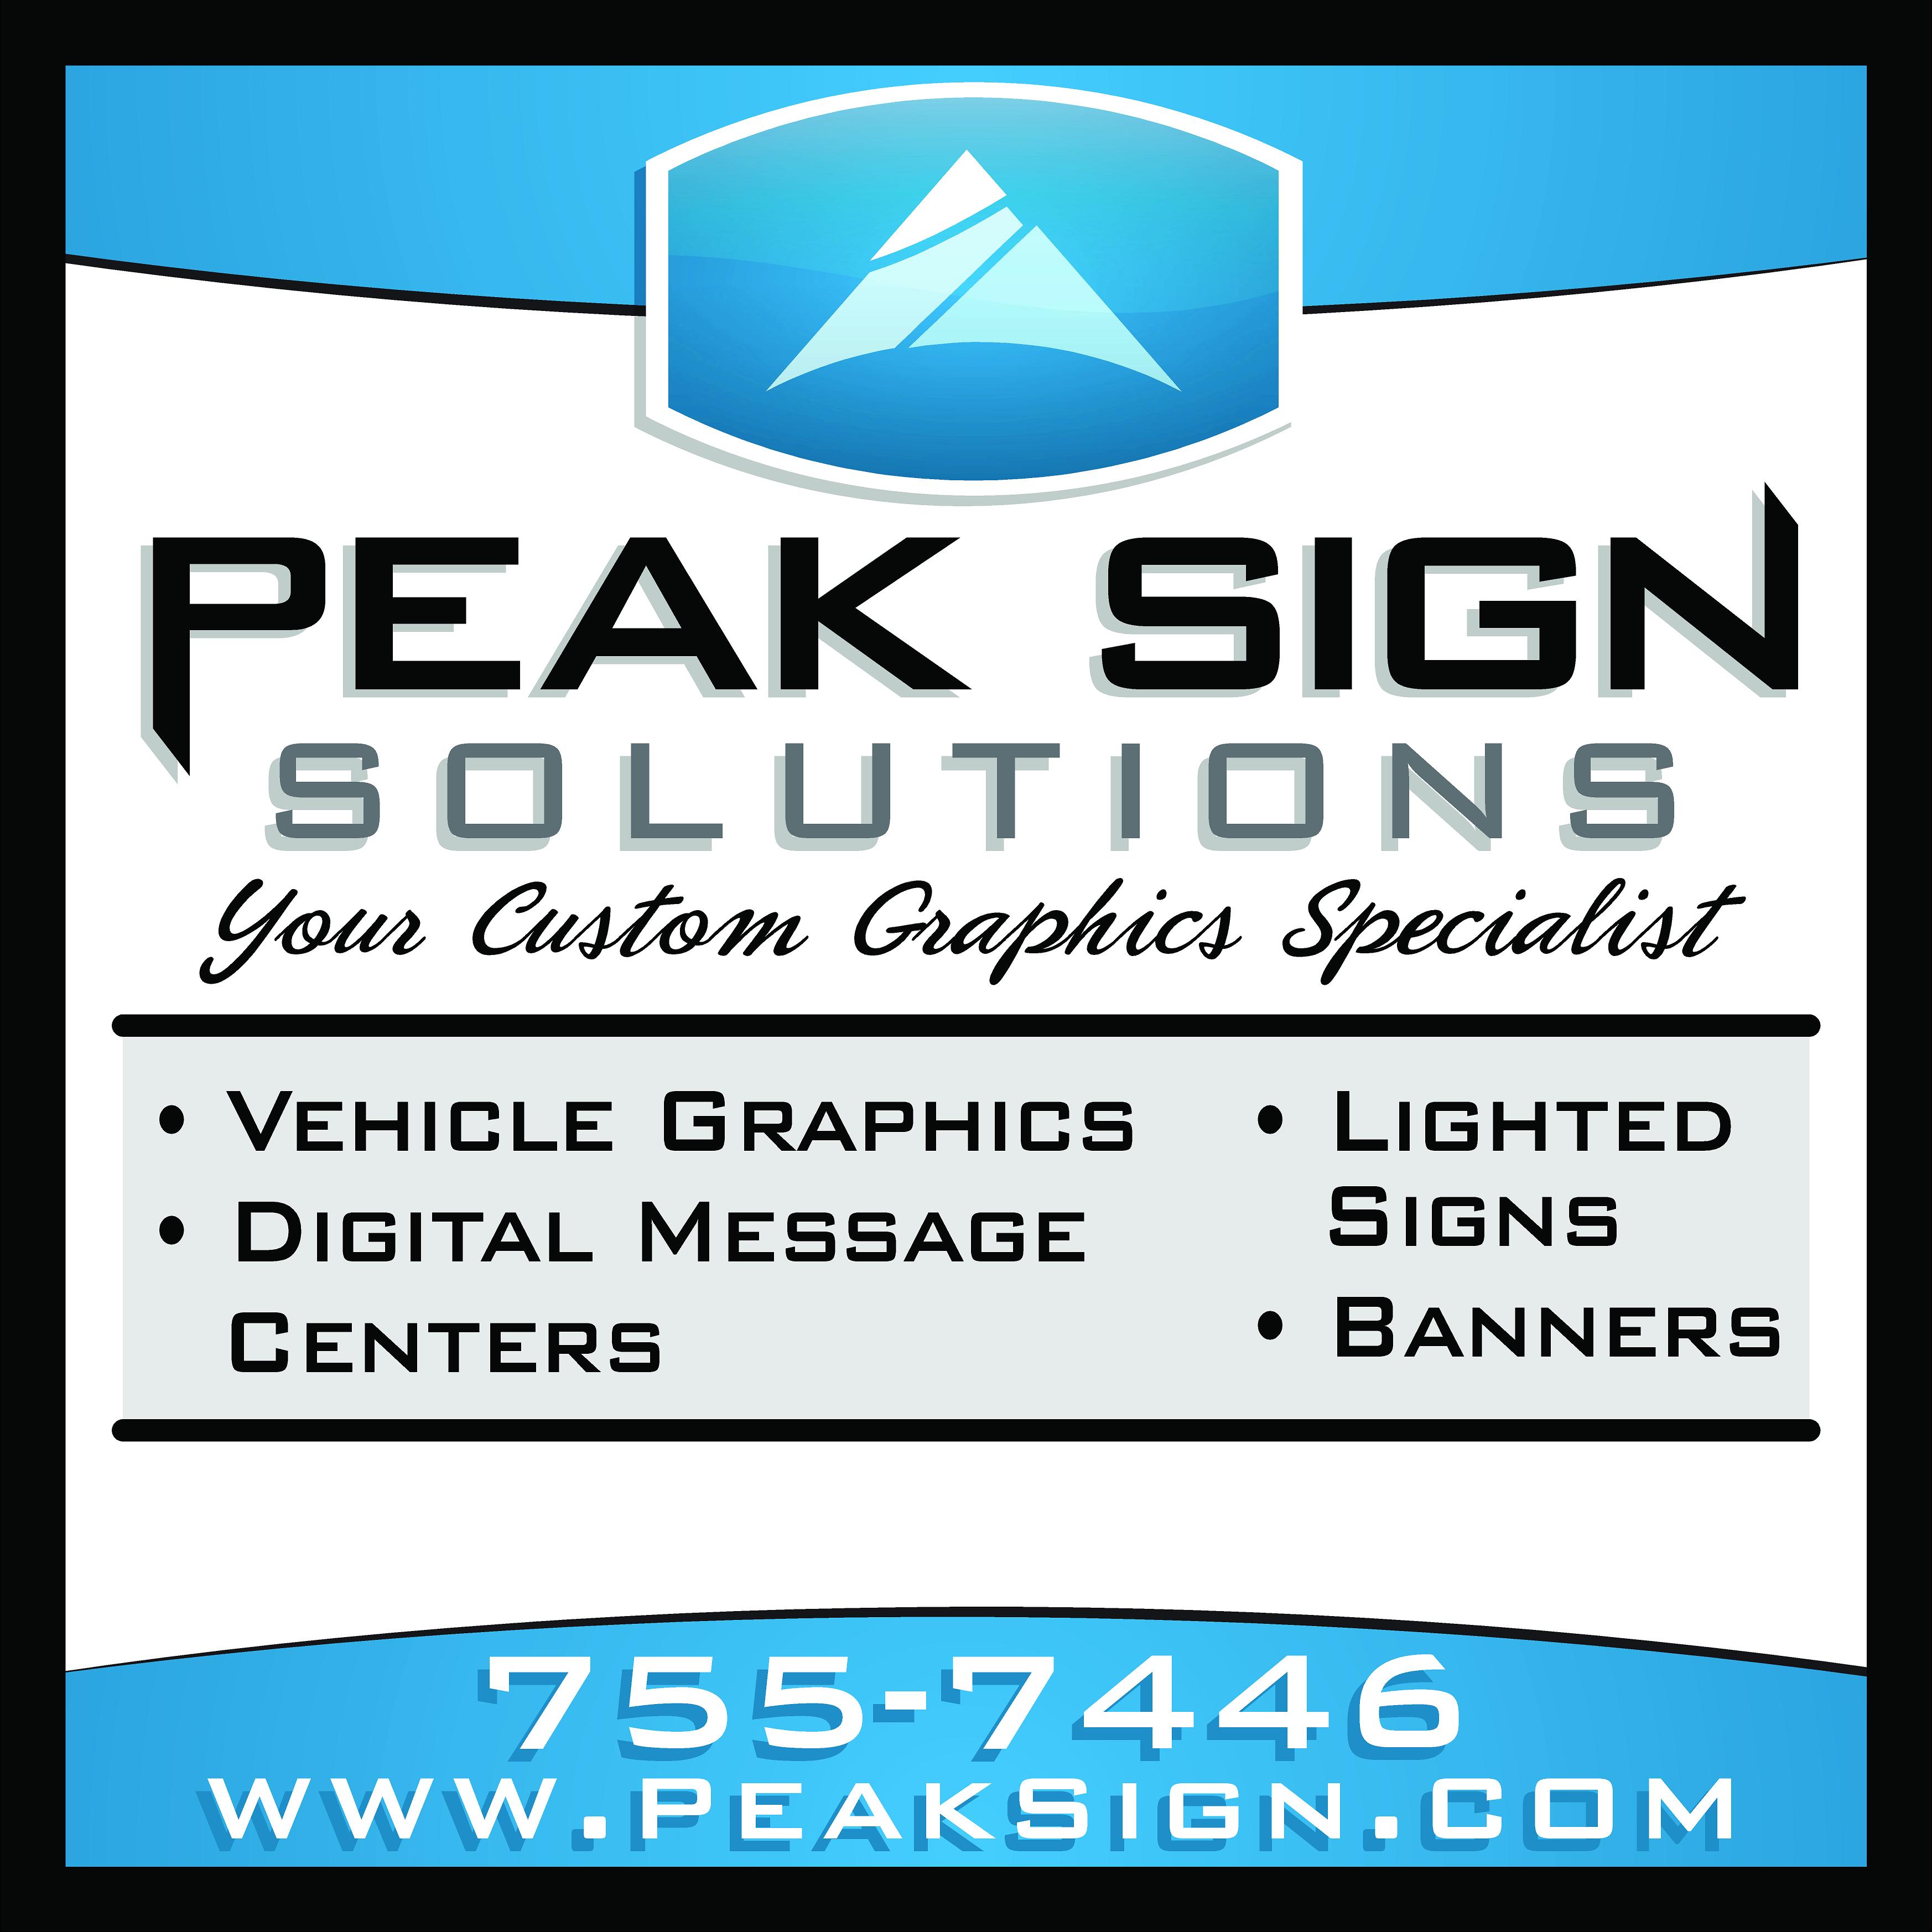 Peak Sign Solutions